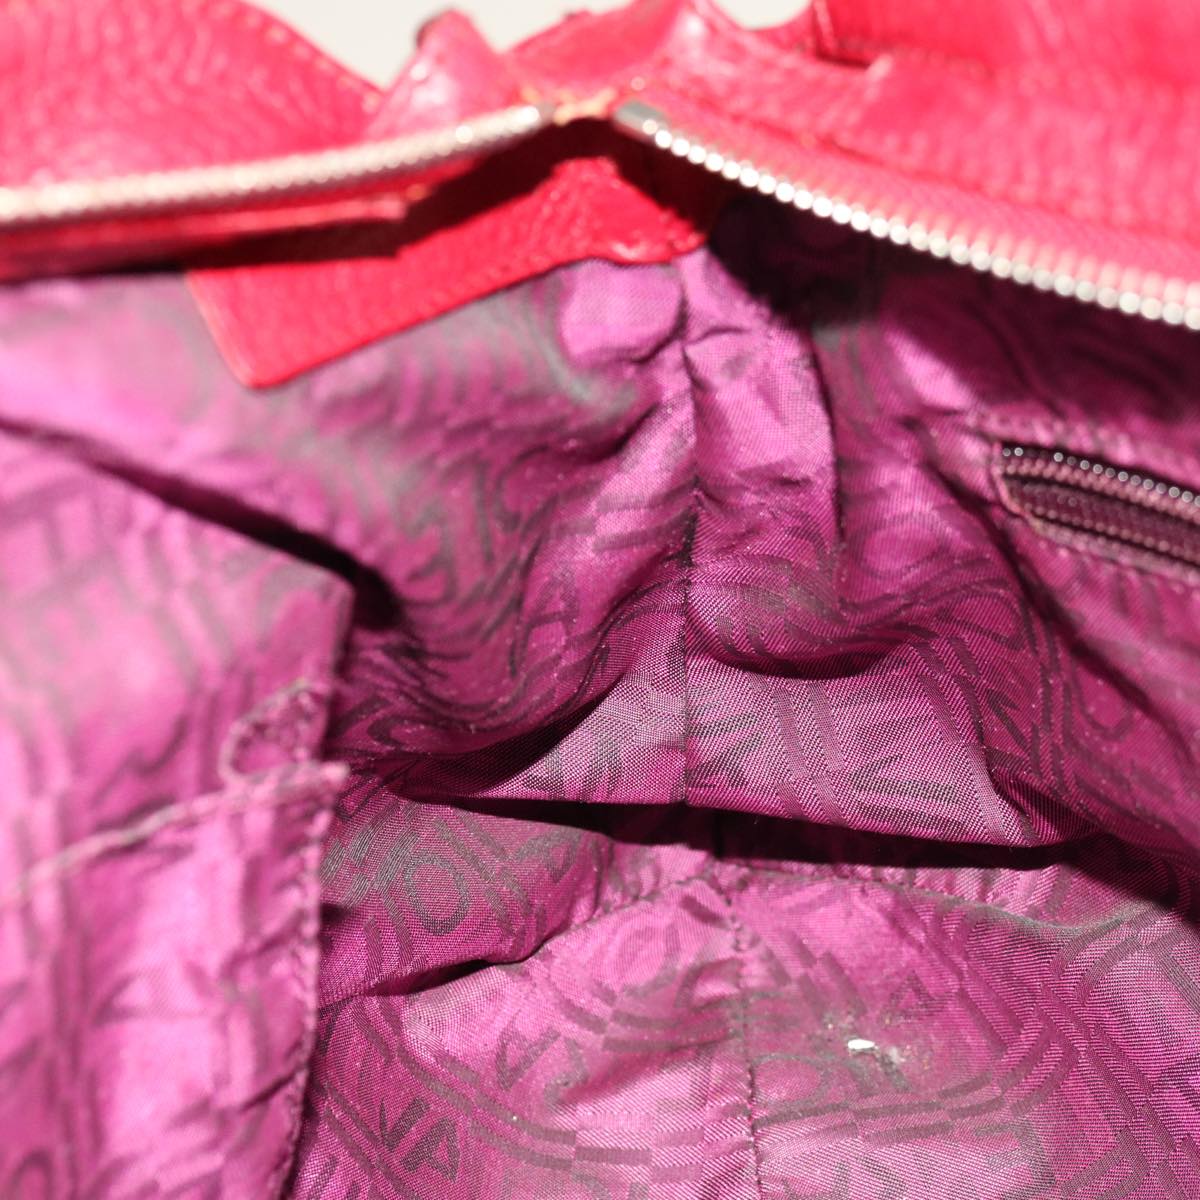 Salvatore Ferragamo Gancini Hand Bag Leather Red Auth 66232